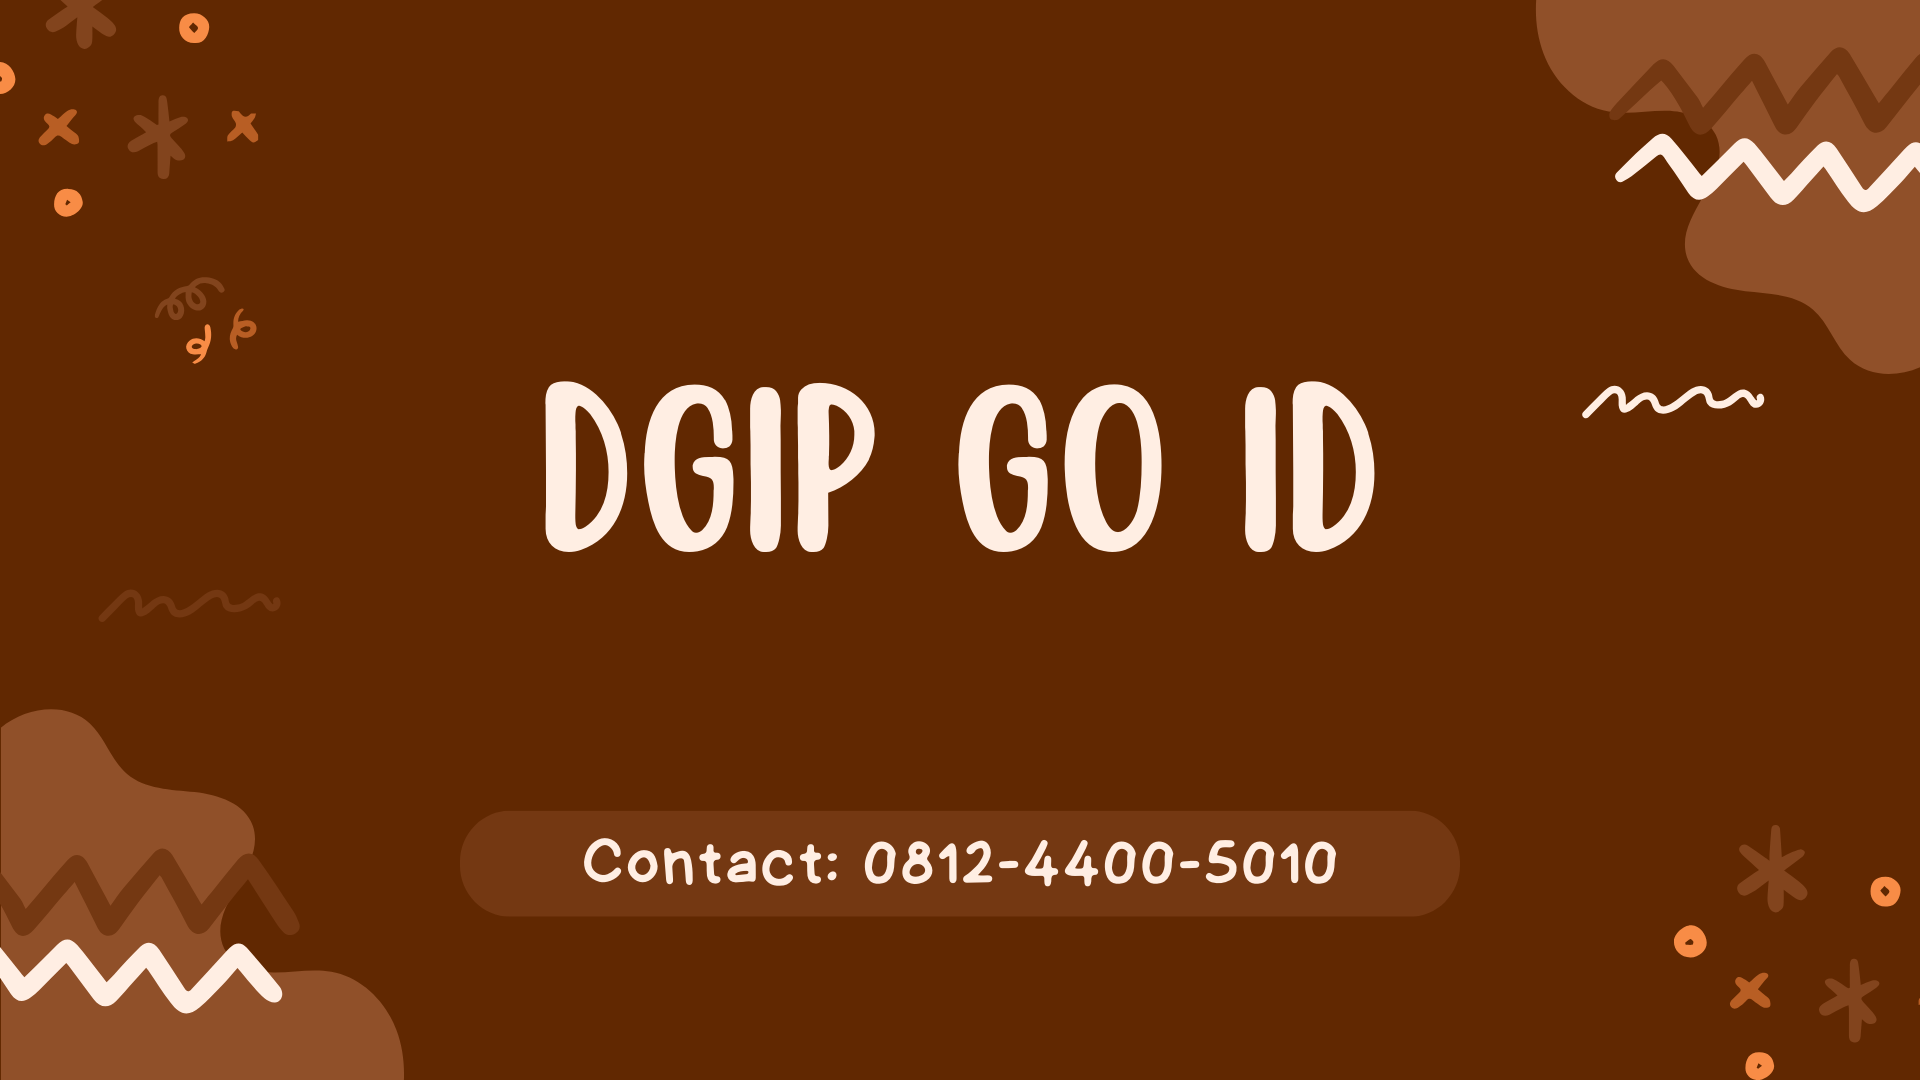 DGIP GO ID